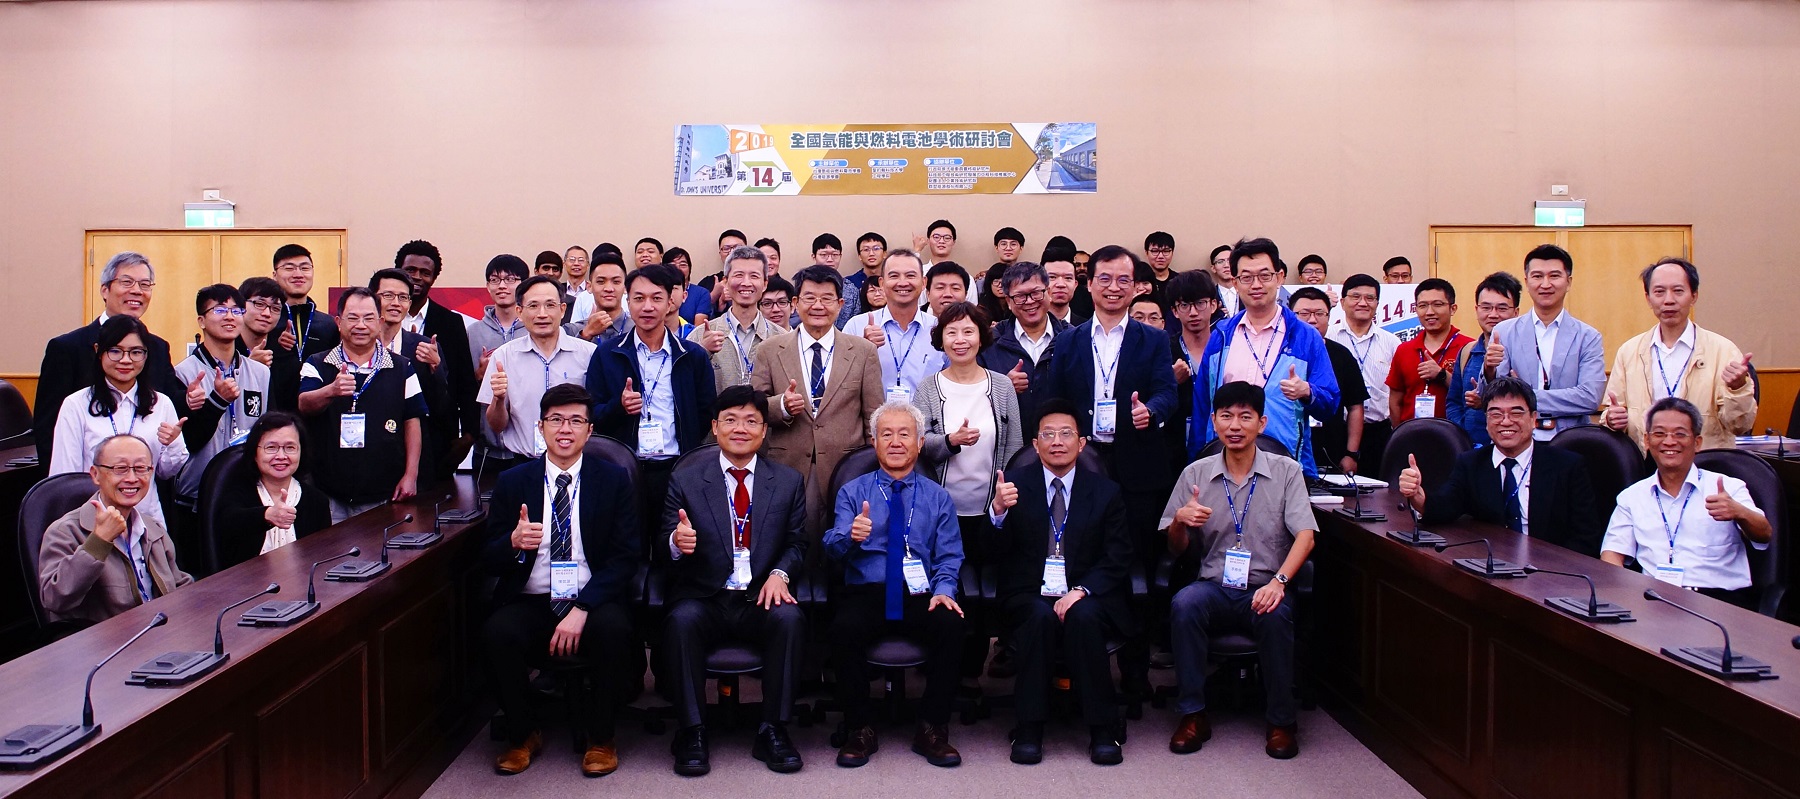 2019第十四屆全國氫能與燃料電池學術研討會暨第六屆台灣能源學會年會大合照